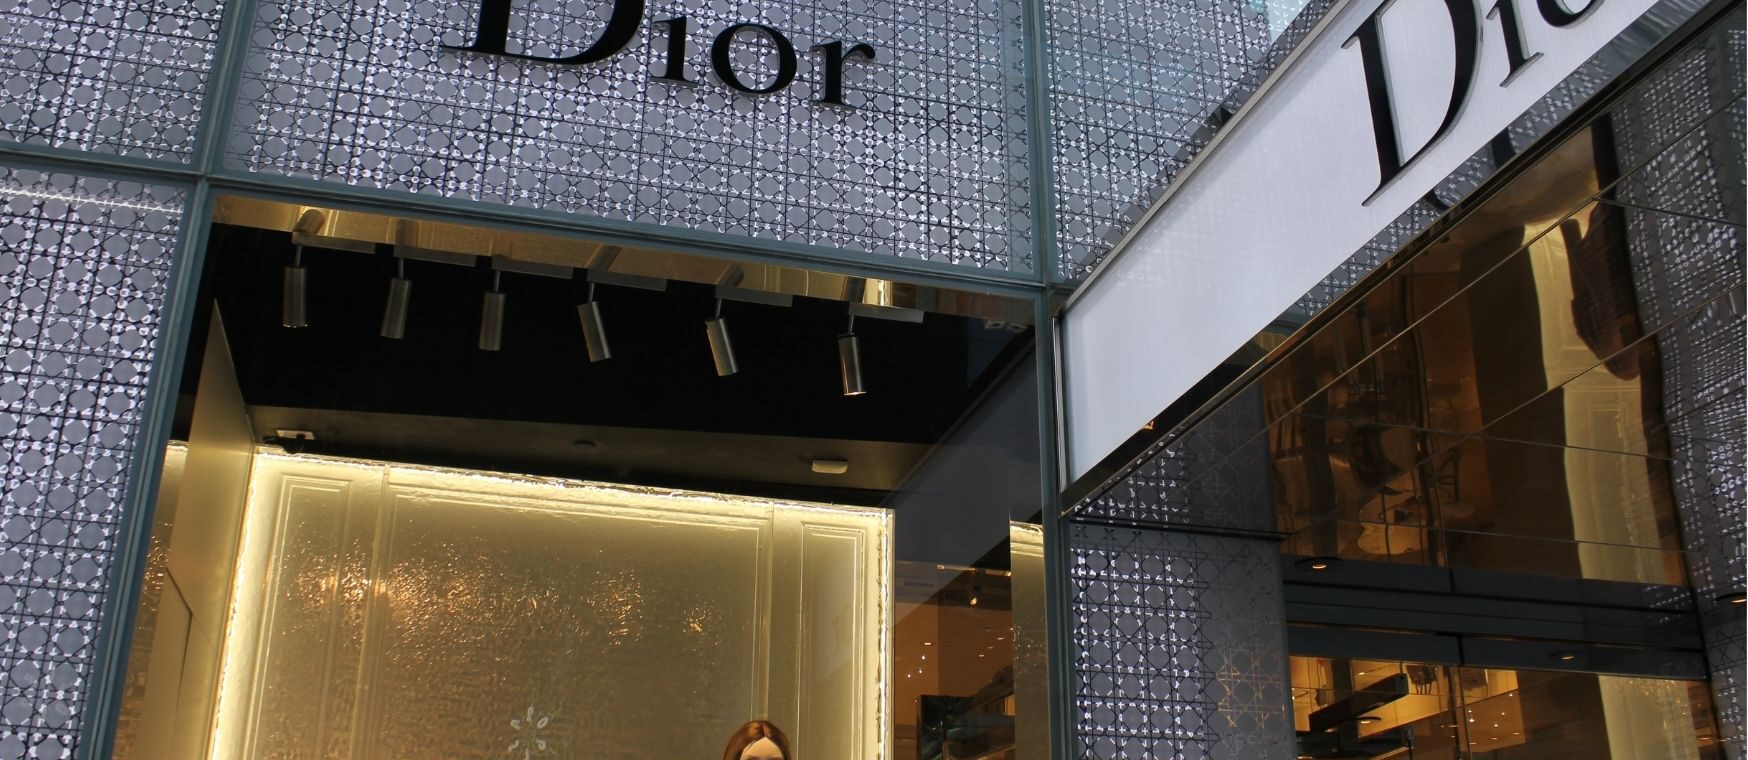 Echte Dior tas herkennen | Neppe Dior tas of echt?